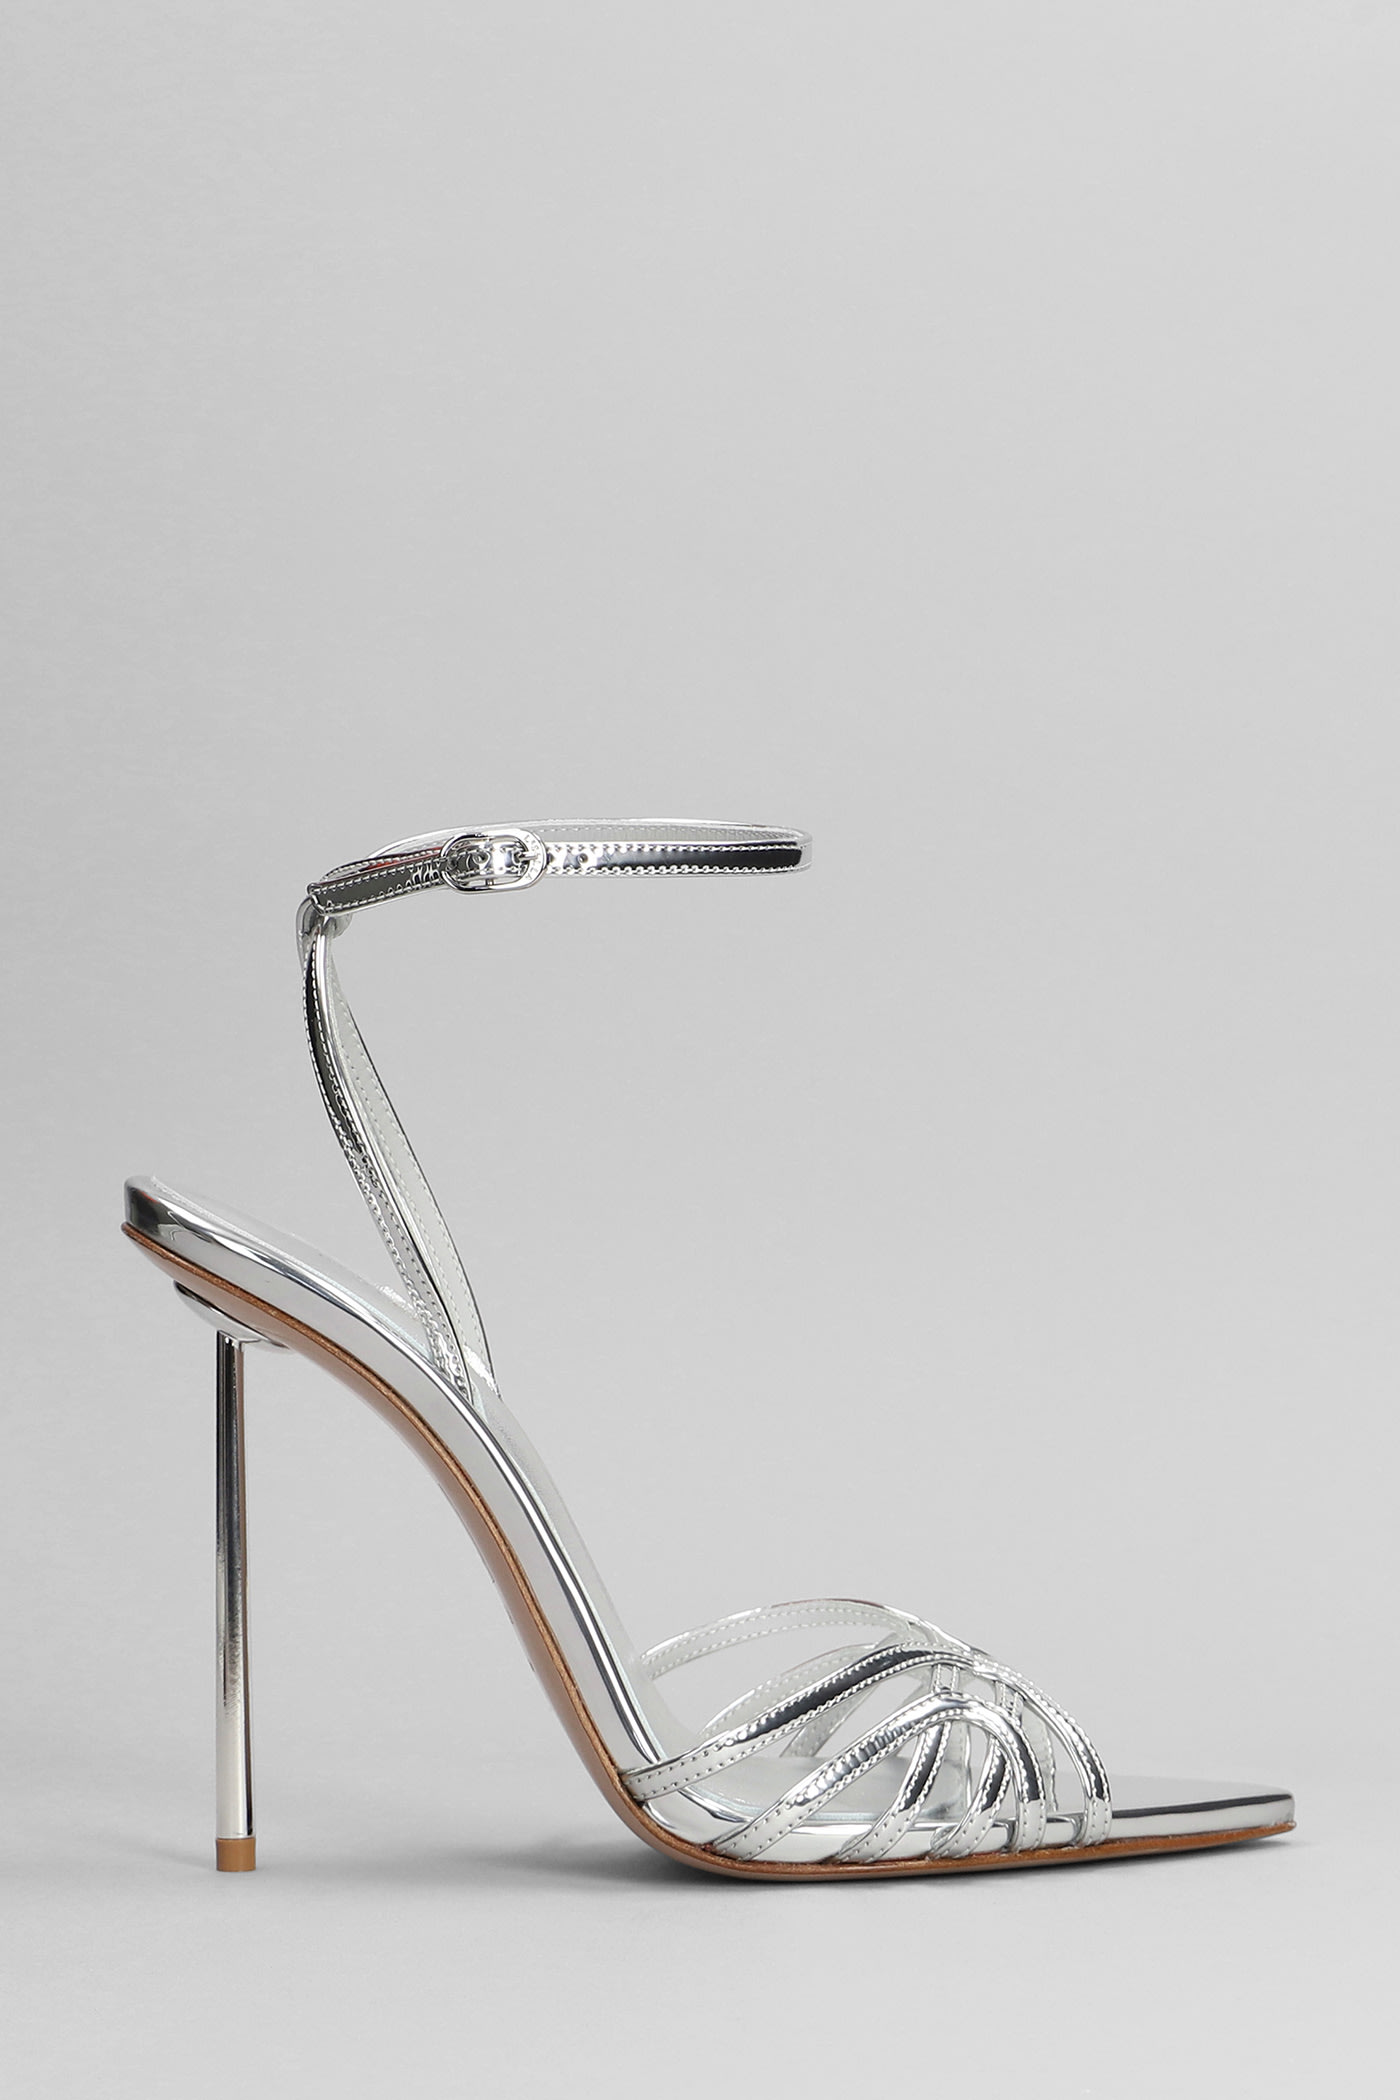 Le Silla Bella Sandals In Silver Leather